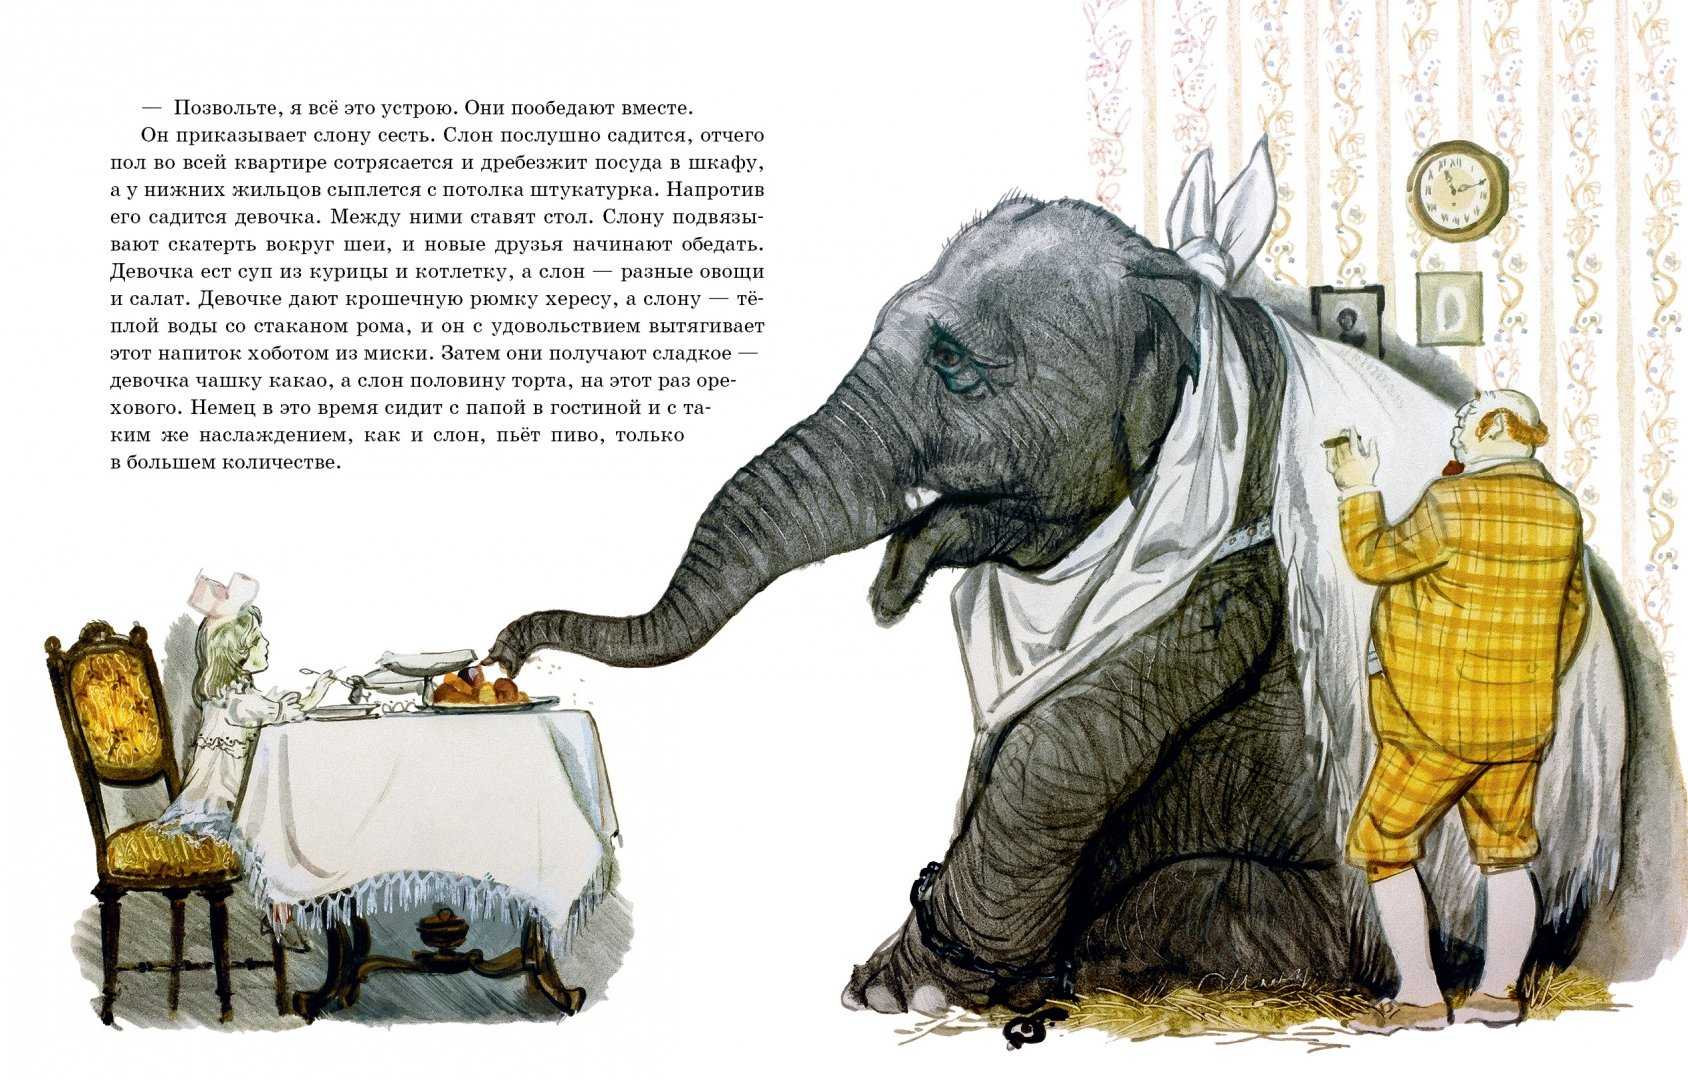 Слон - Толстой ЛН Рассказ про слона, который убил хозяина за дурное обращение Потом посадил старшего сына себе на спину и стал много на него работать